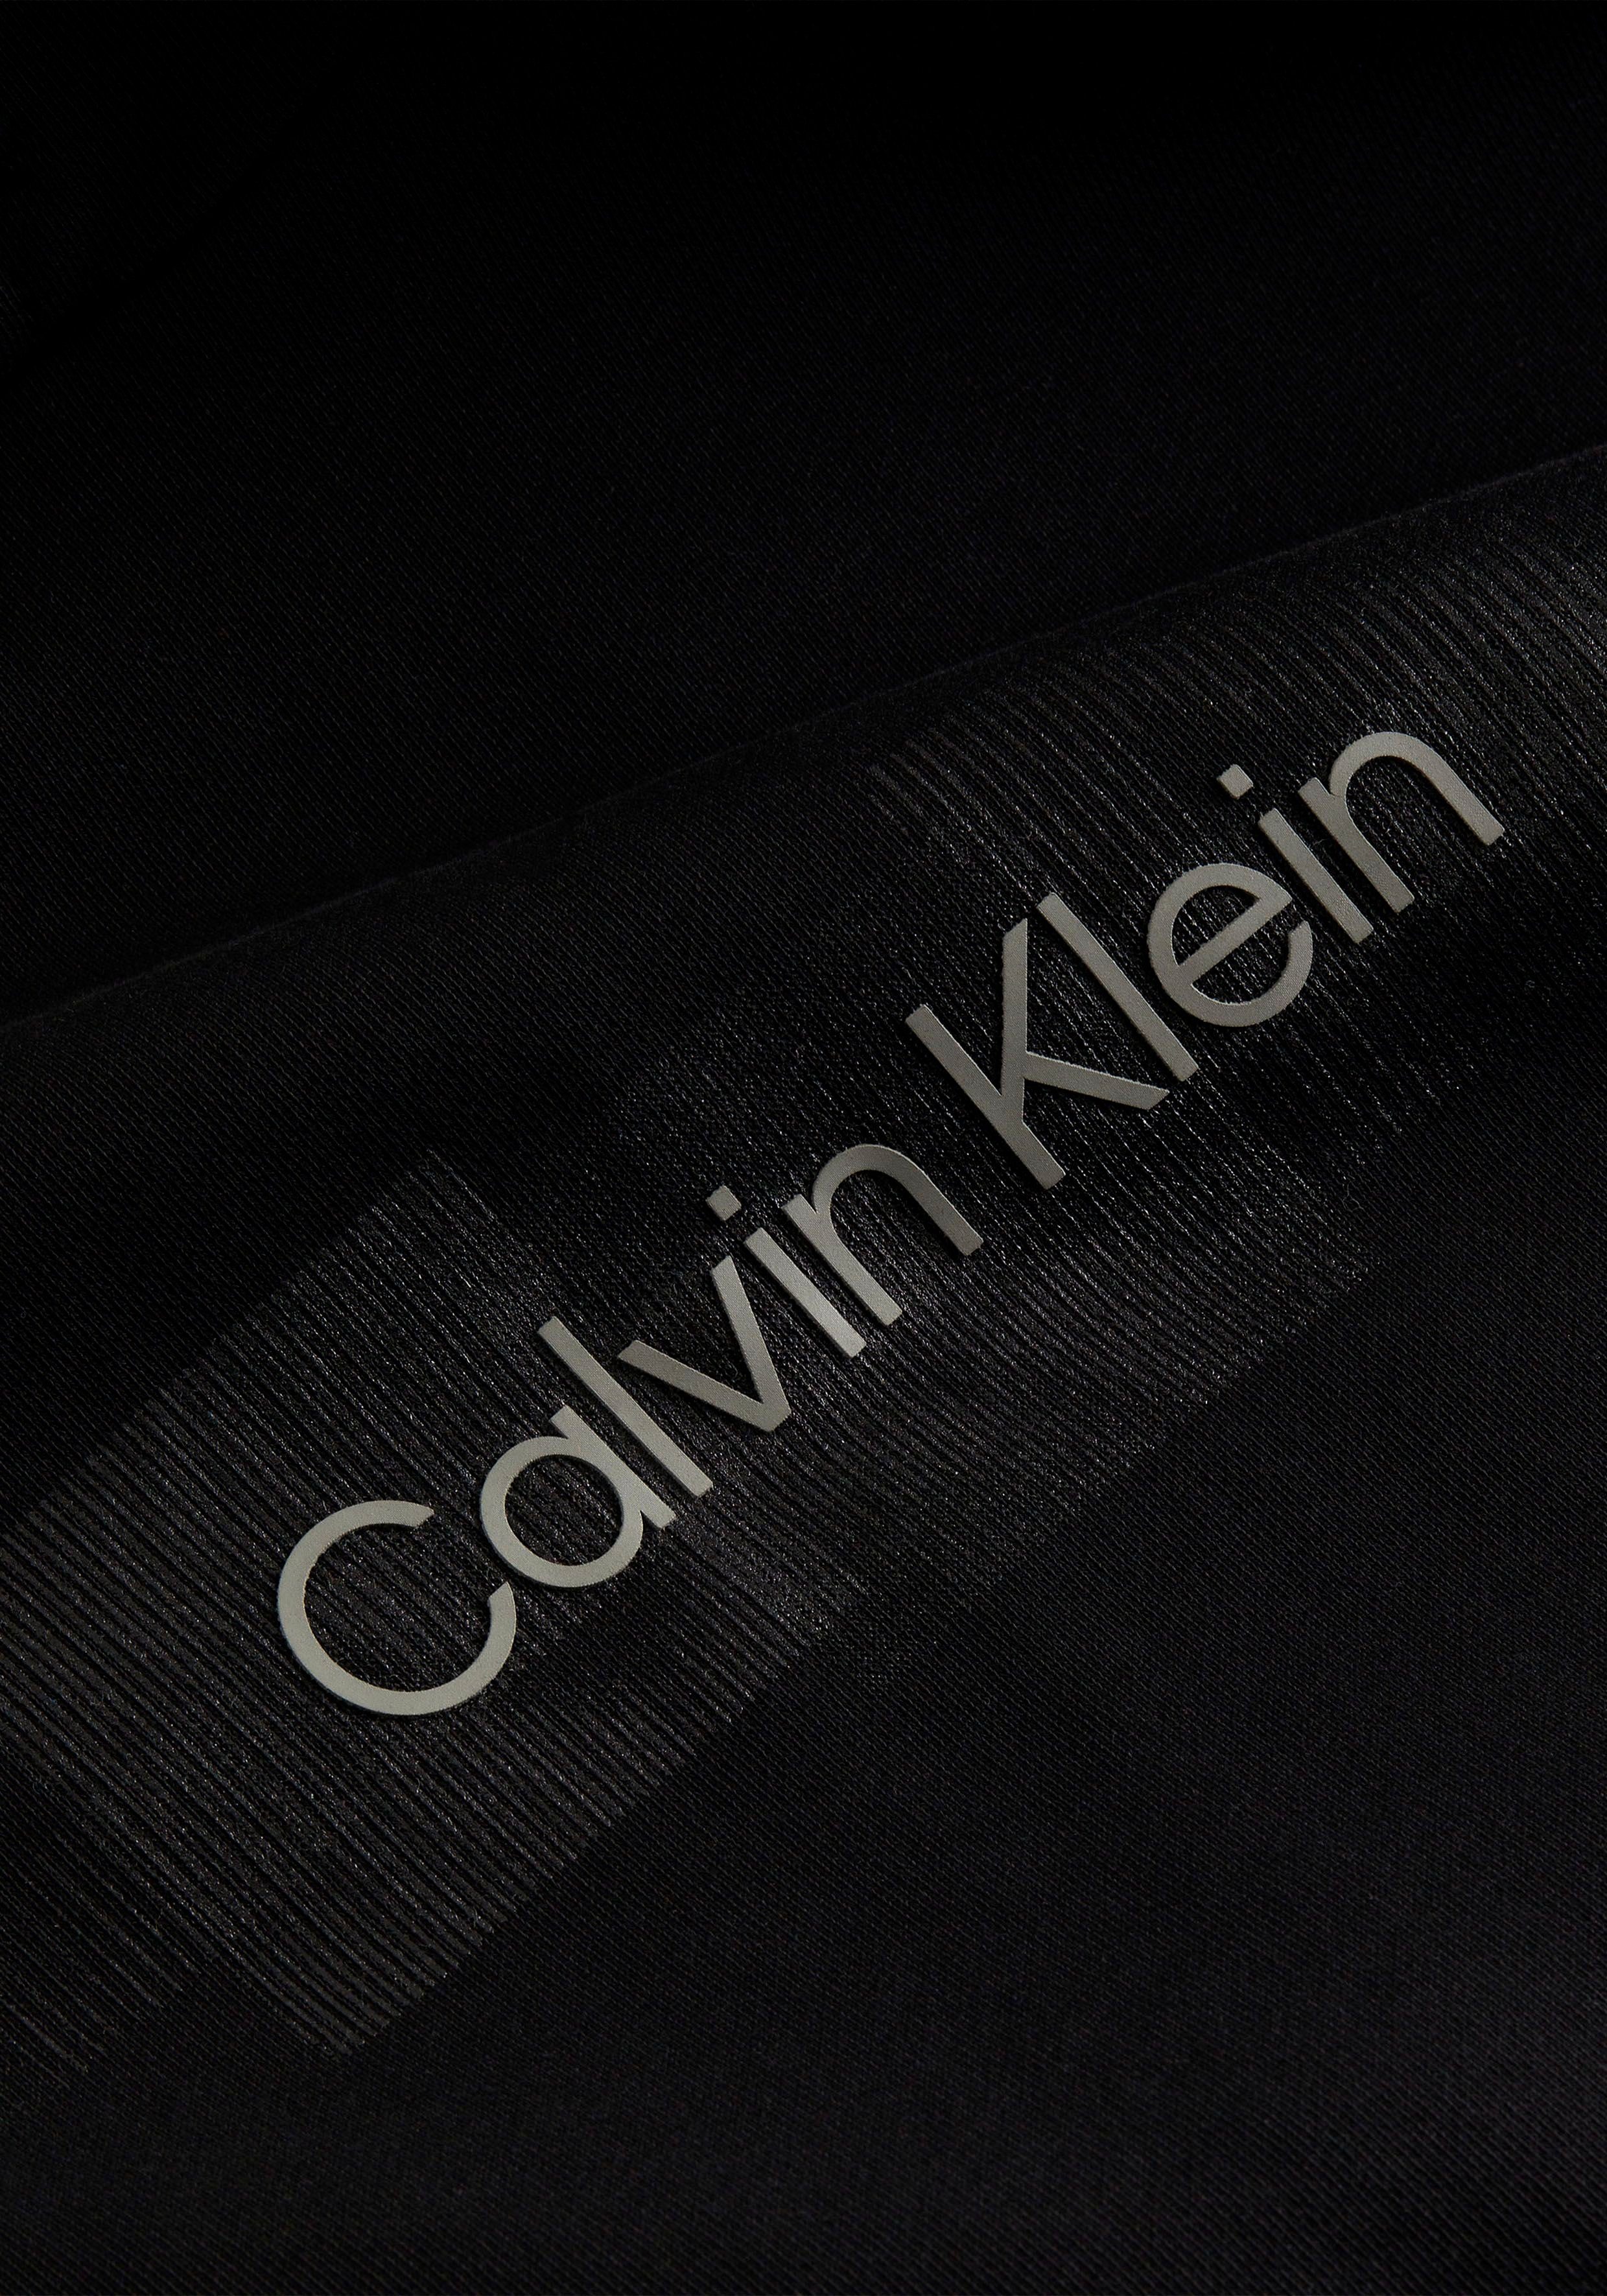 Calvin an der Kordelzug BOX Kapuzensweatshirt Ck STRIPED Black HOODIE LOGO Klein Kapuze mit